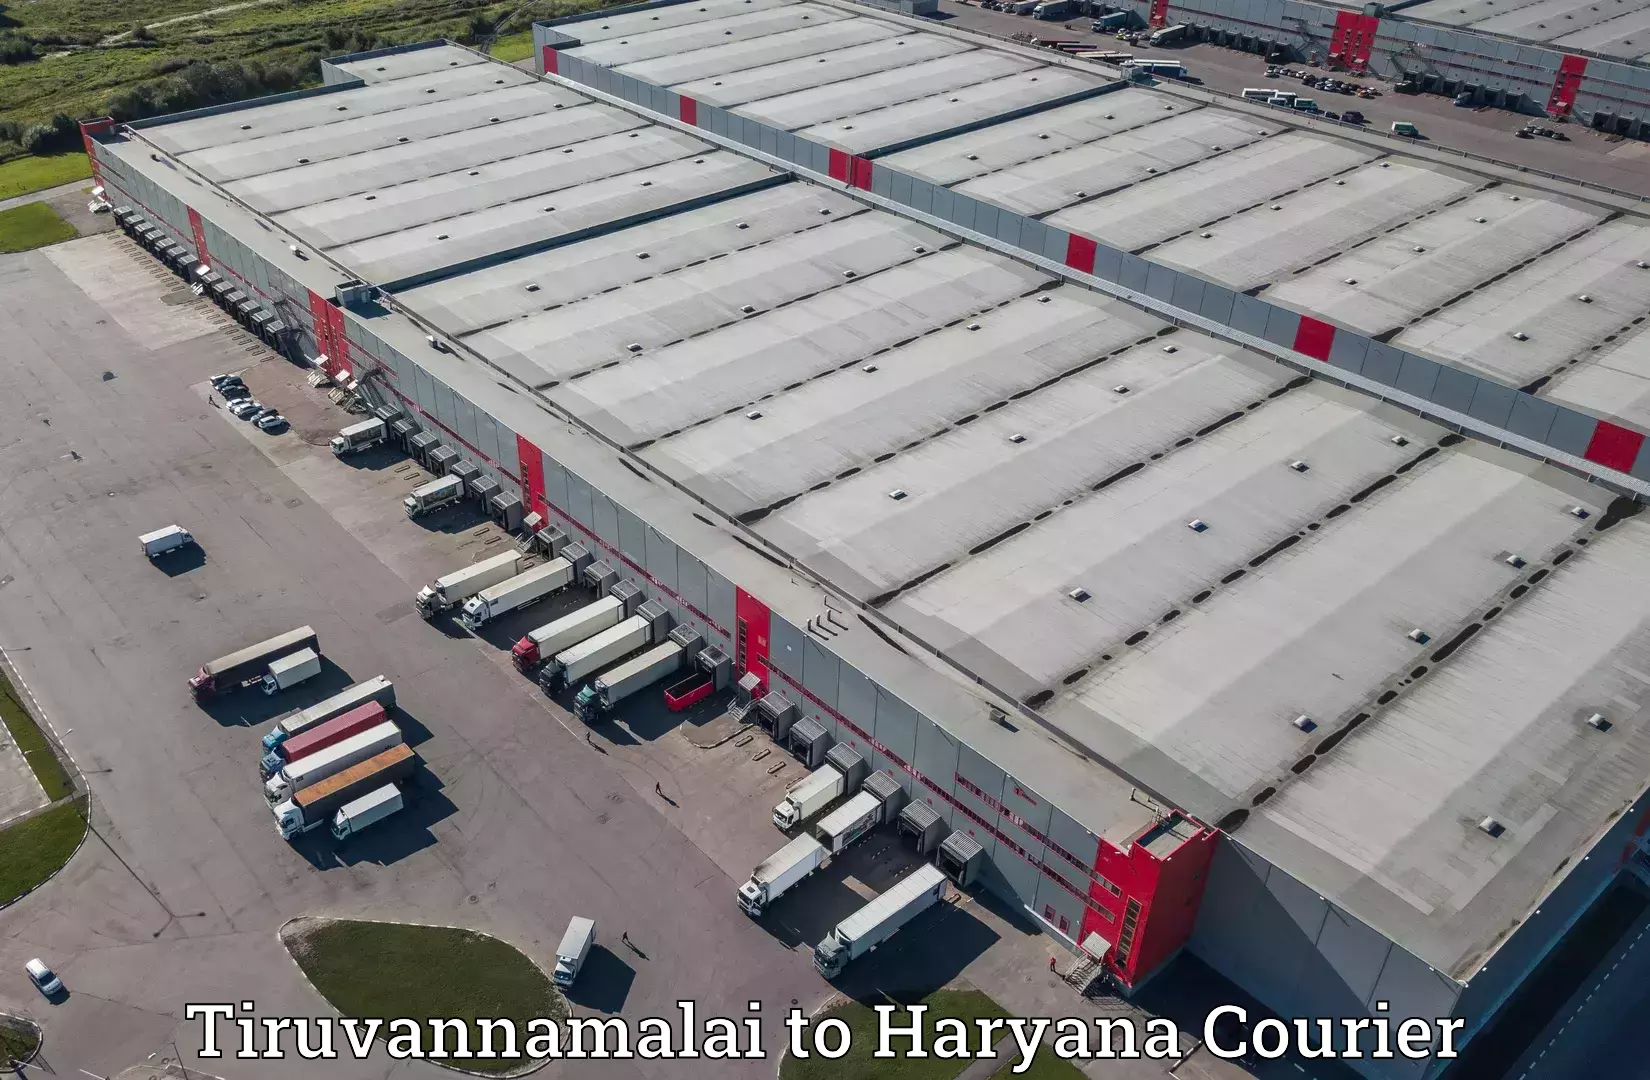 Bulk shipment Tiruvannamalai to NCR Haryana